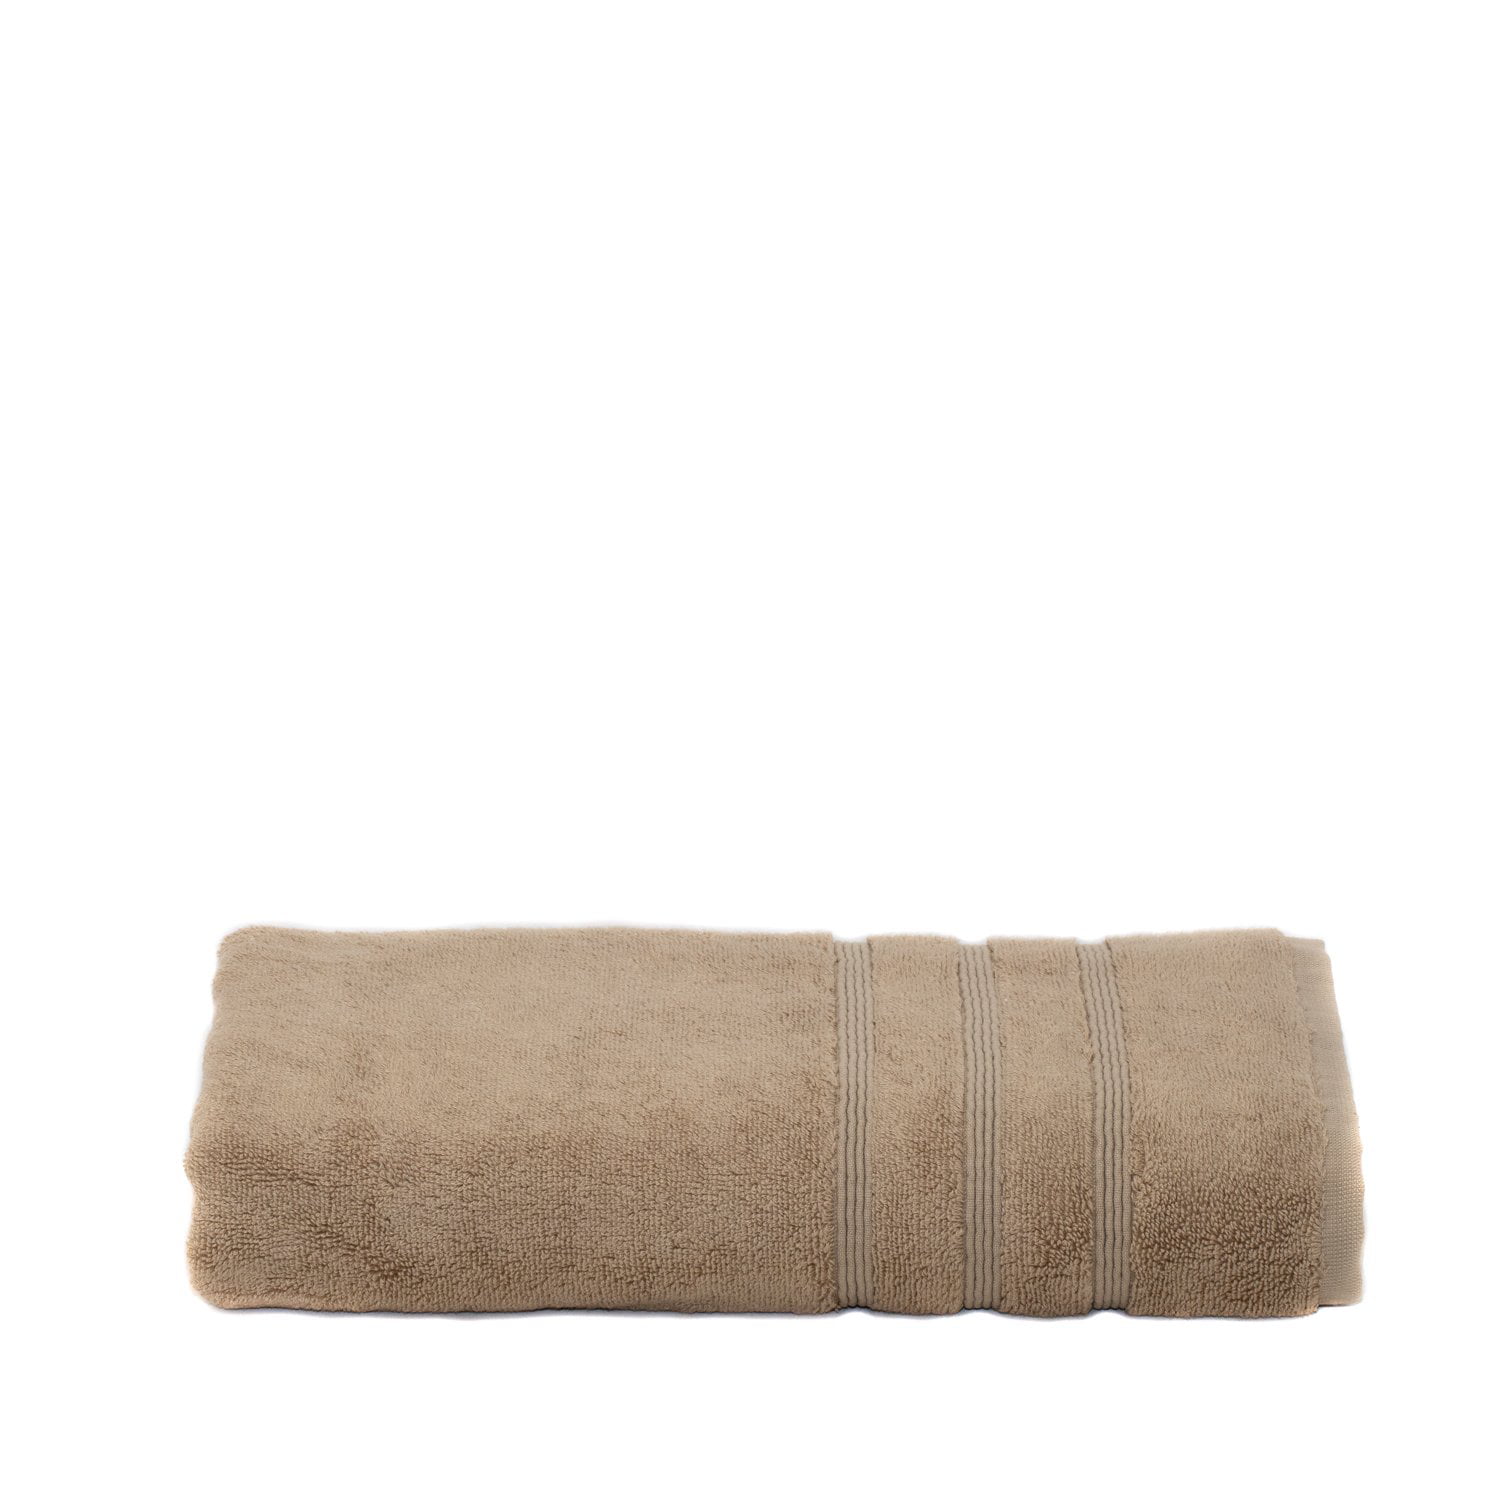 Details about   Plush Spa Quality Bath Towel 6pc Set 804 GSM Absorbent Soft Twist Cotton Towels 